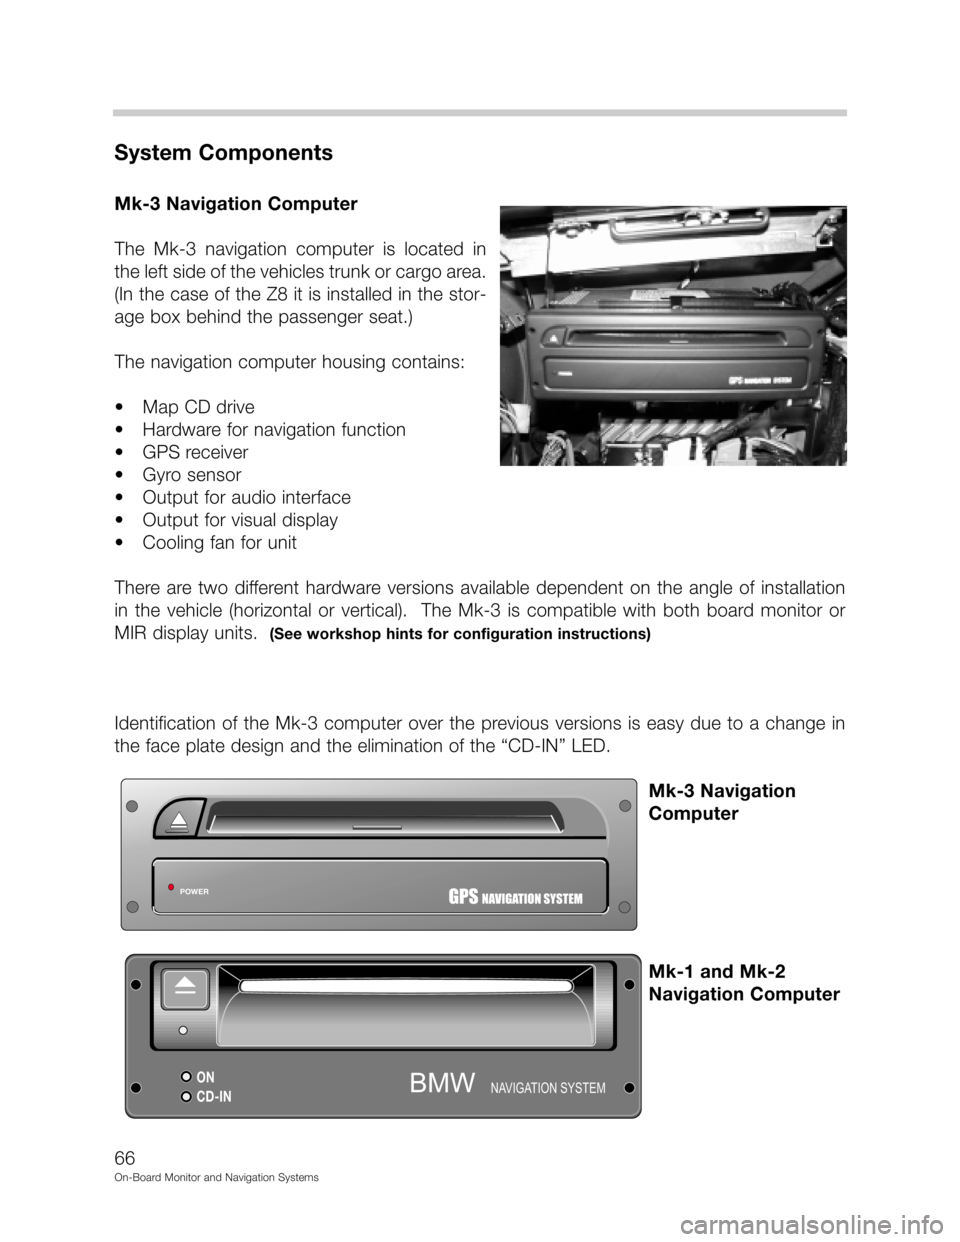 BMW 5 SERIES 1997 E39 On Board Monitor System Workshop Manual DD



"&
(	
-.2./!!
	0", 1" !2./
# 9. 
&
 	
   
&
9
70
